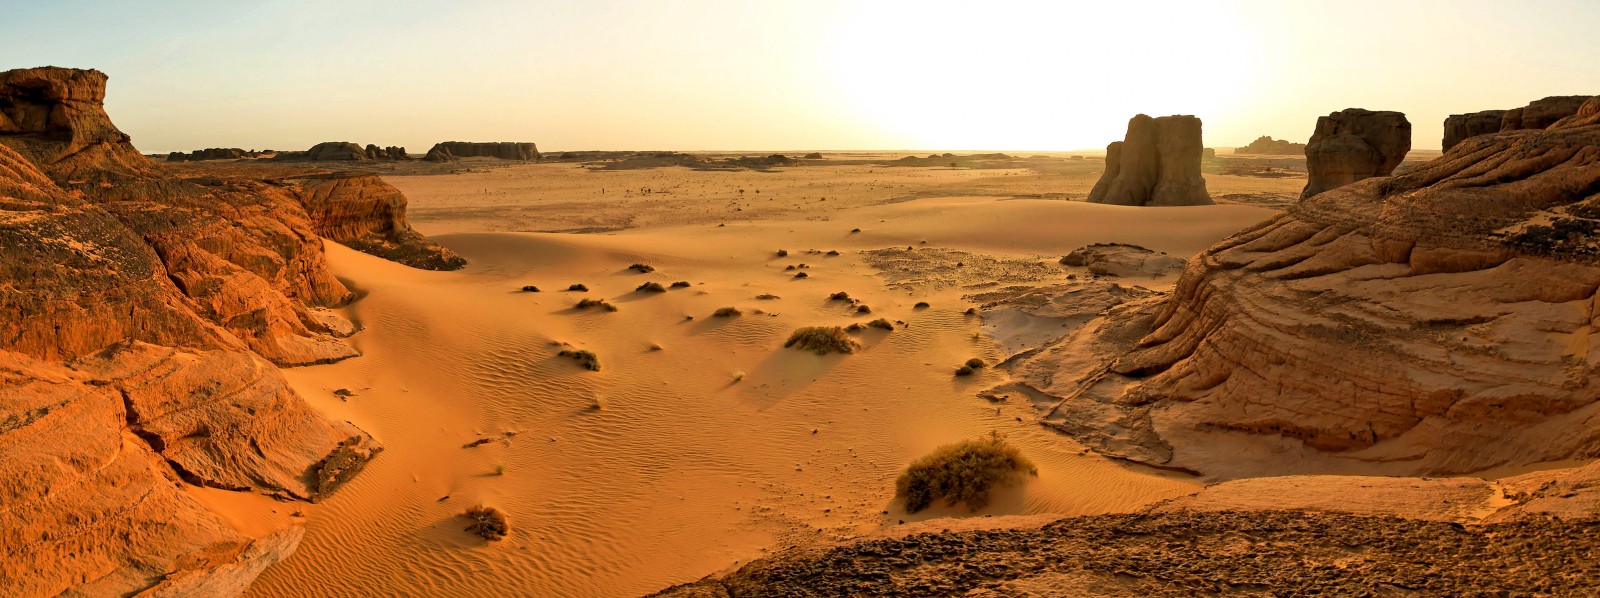 desert-panoramiques-6-1600x598